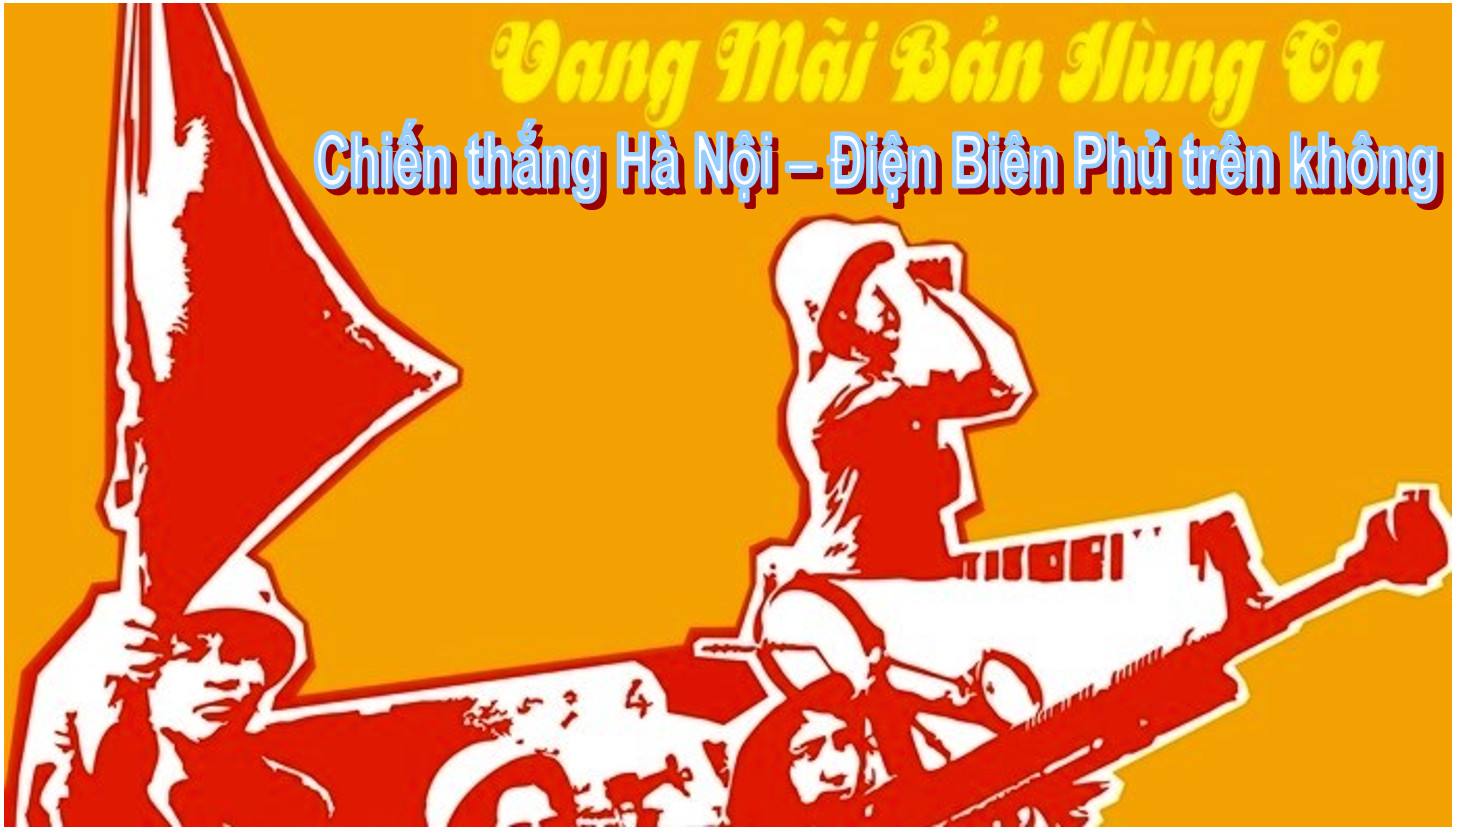 “Hà Nội - Điện Biên Phủ trên không”: Chiến thắng của ý chí và khí phách Việt Nam